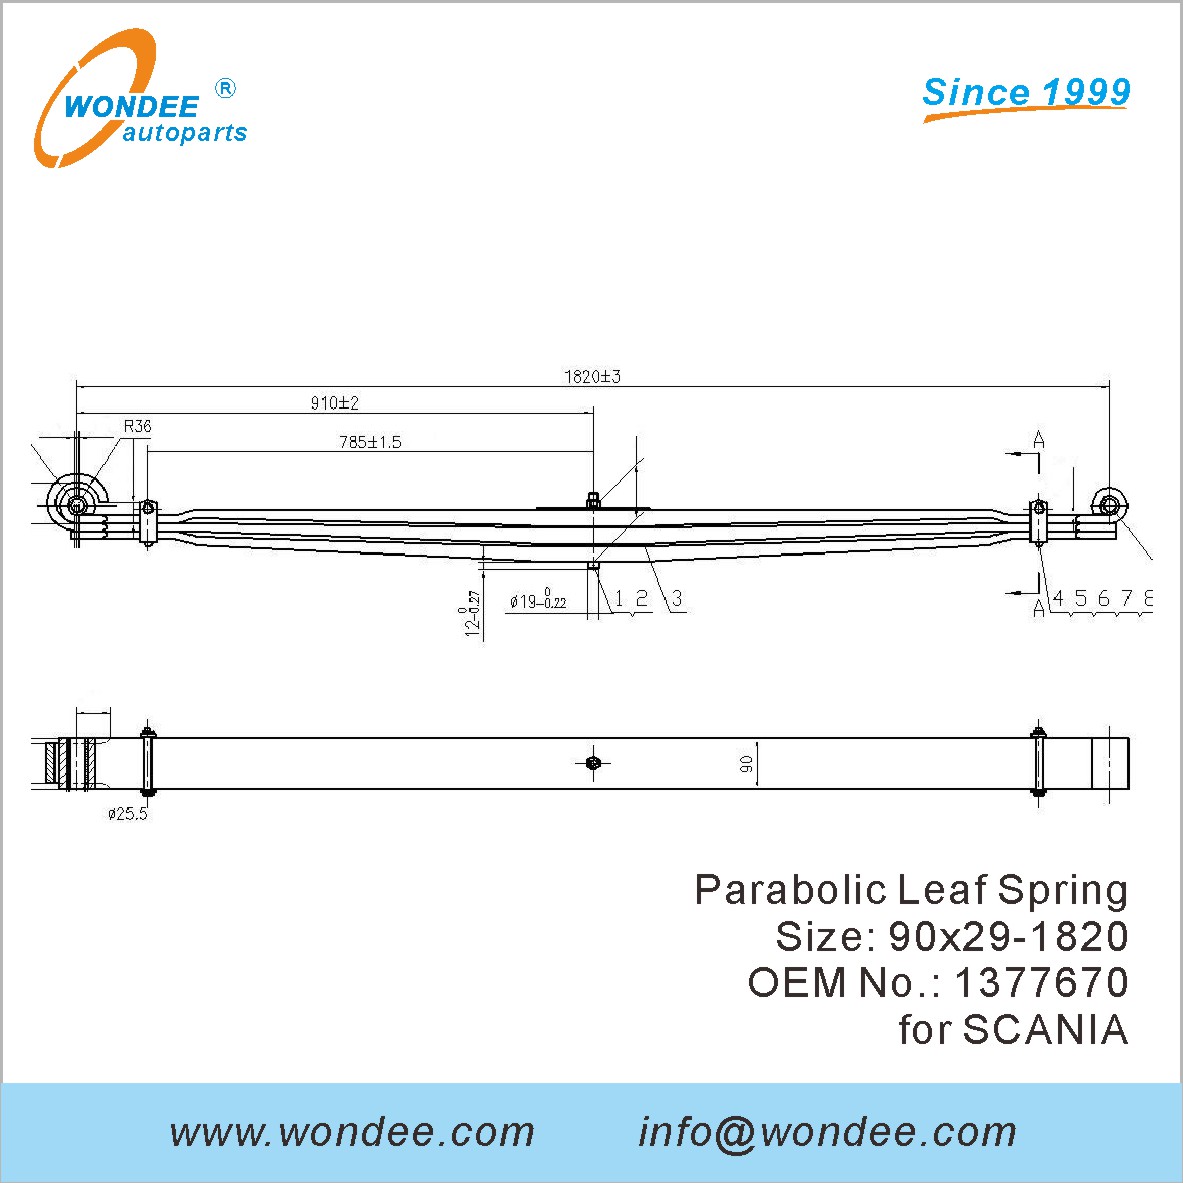 WONDEE heavy duty parabolic Leaf Spring OEM 1377670 for SCANIA